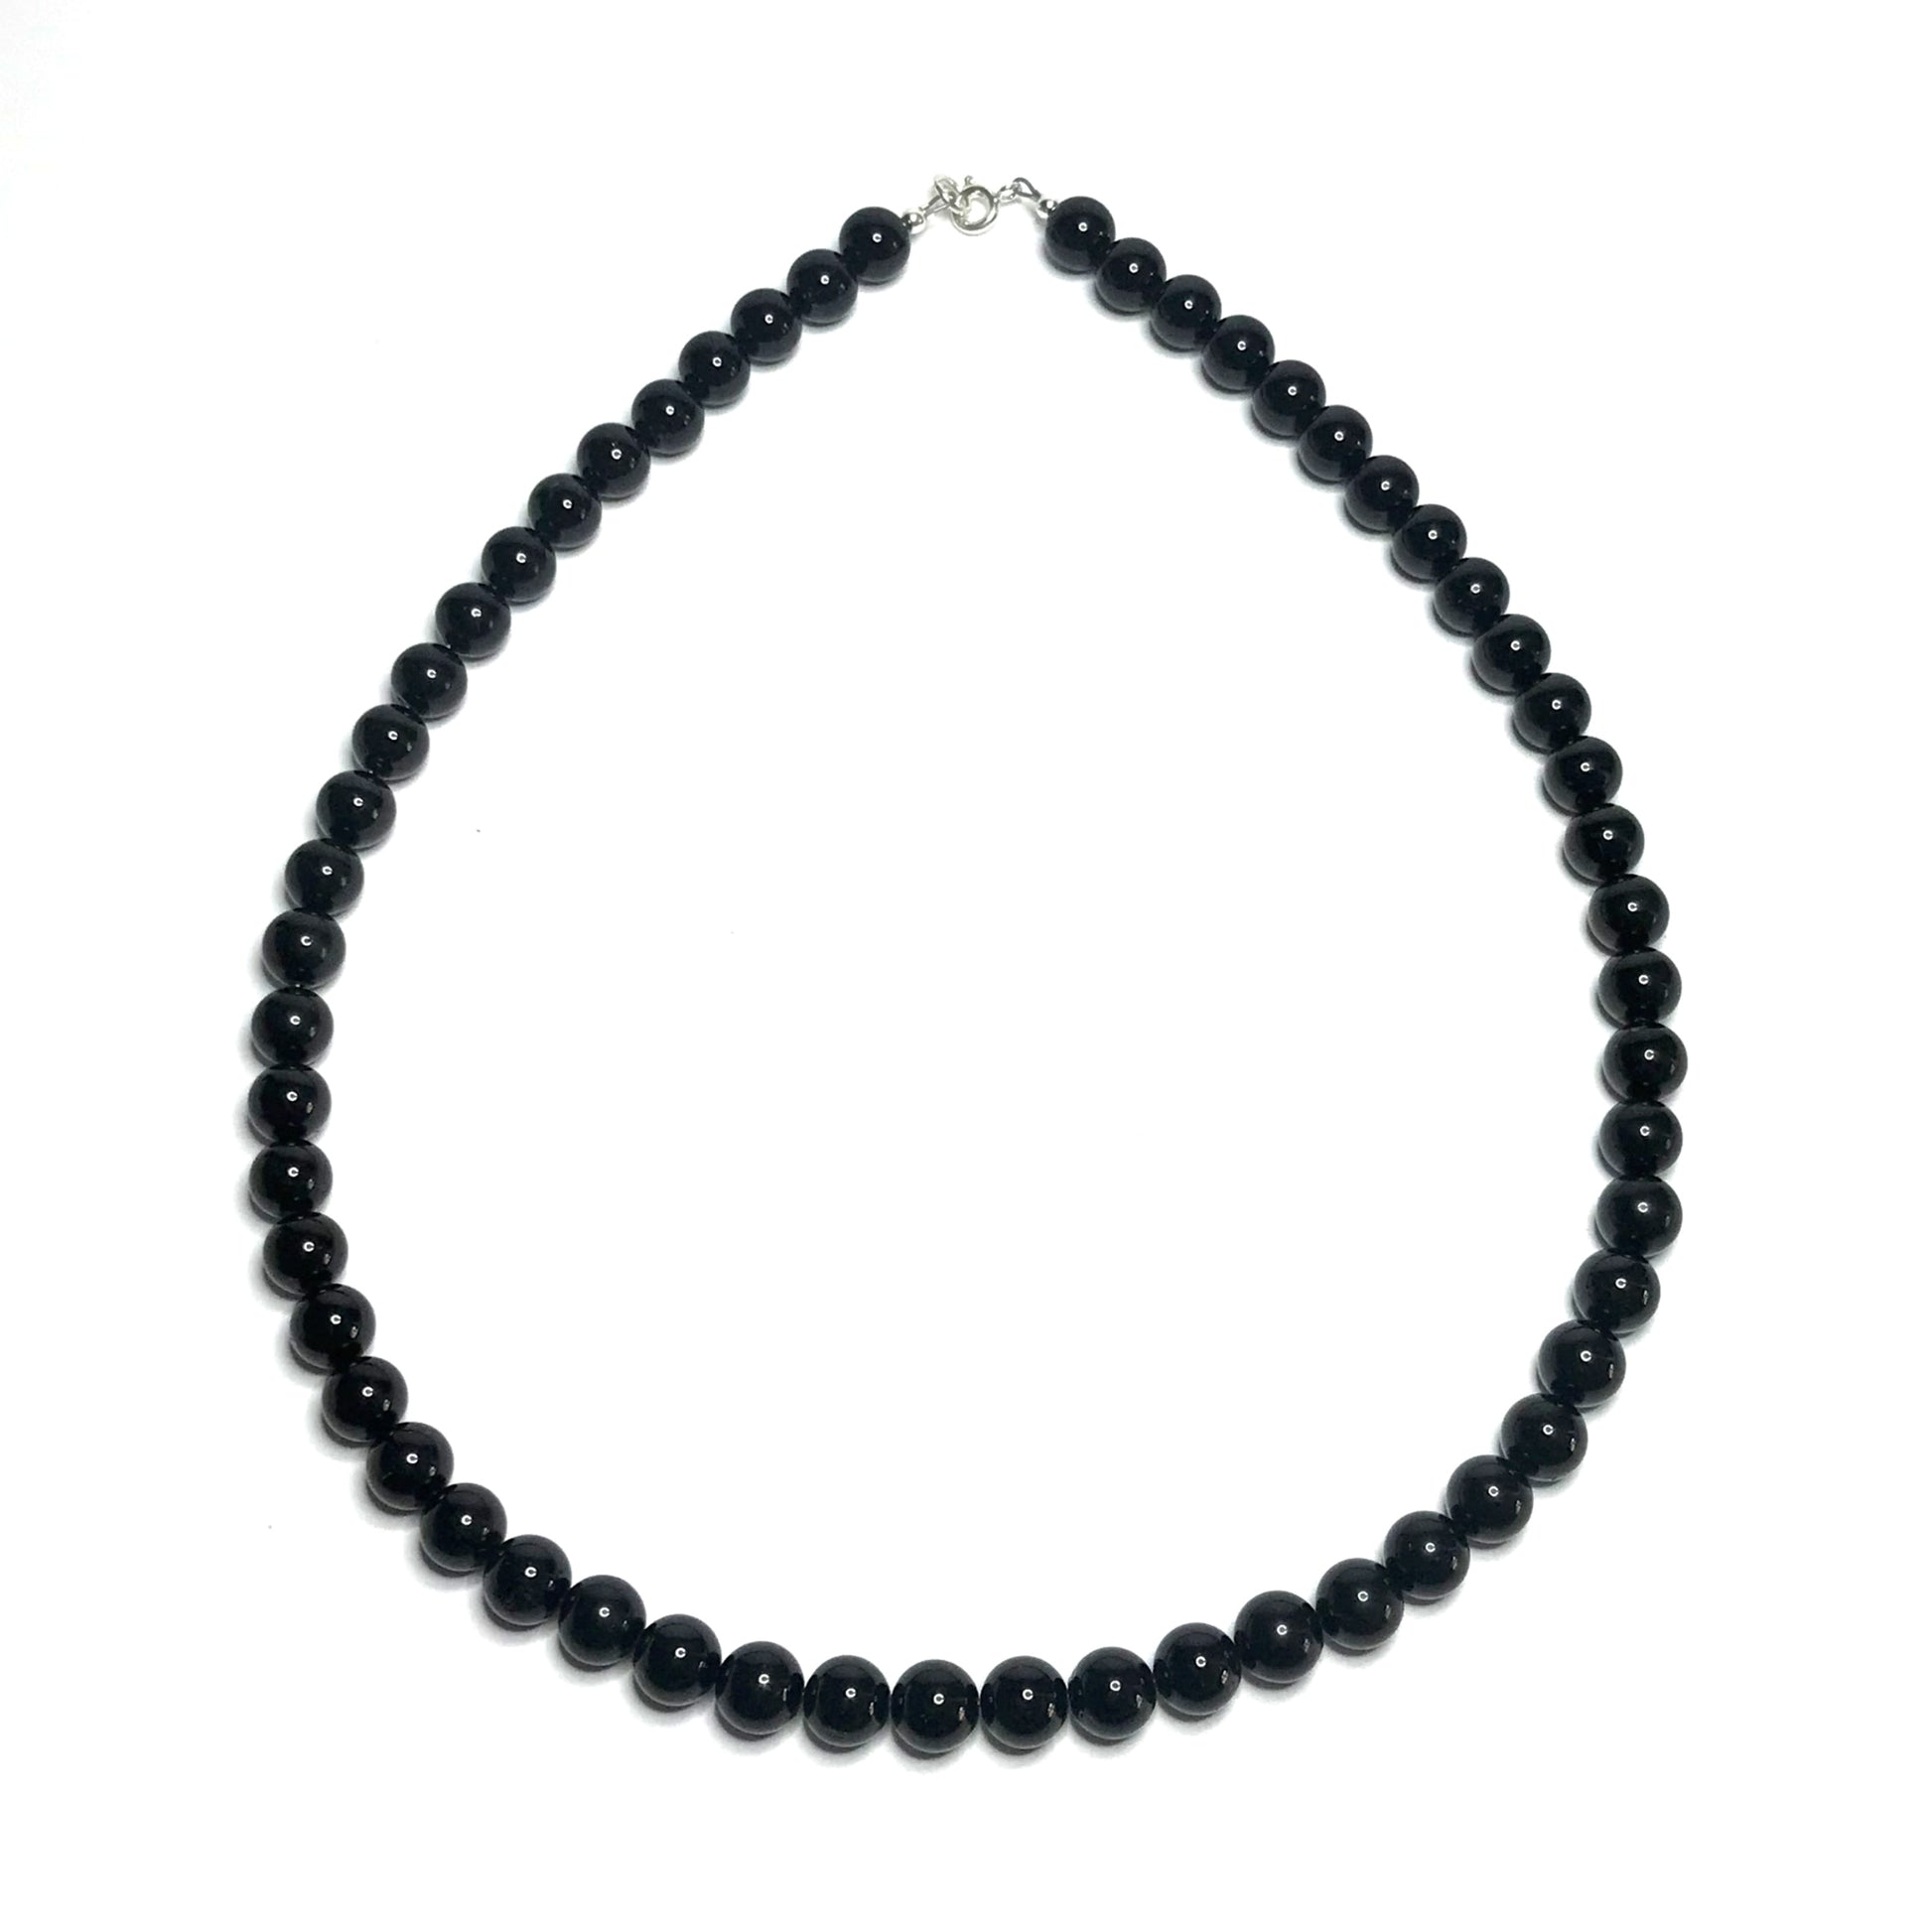 Black gemstone beaded necklace